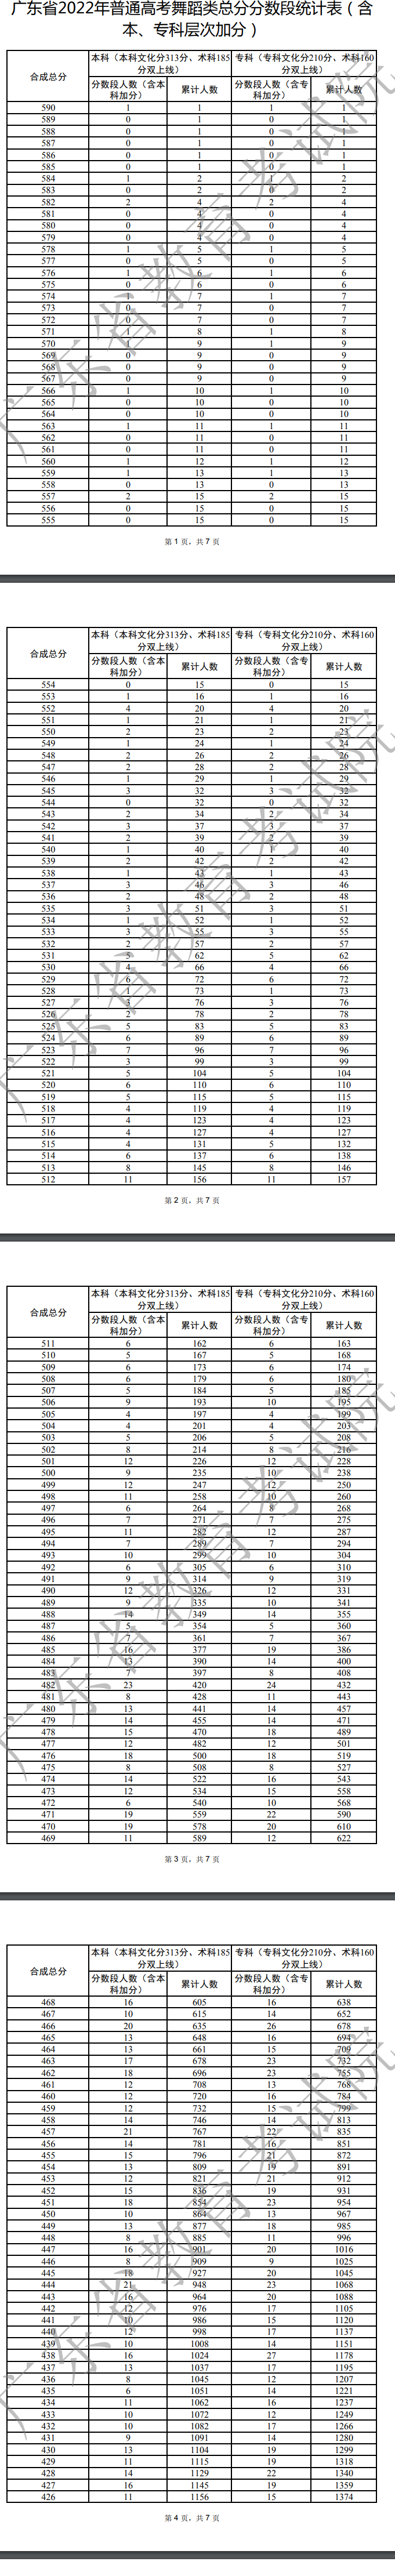 2022广东高考舞蹈类一分一段表 本科成绩排名情况查询